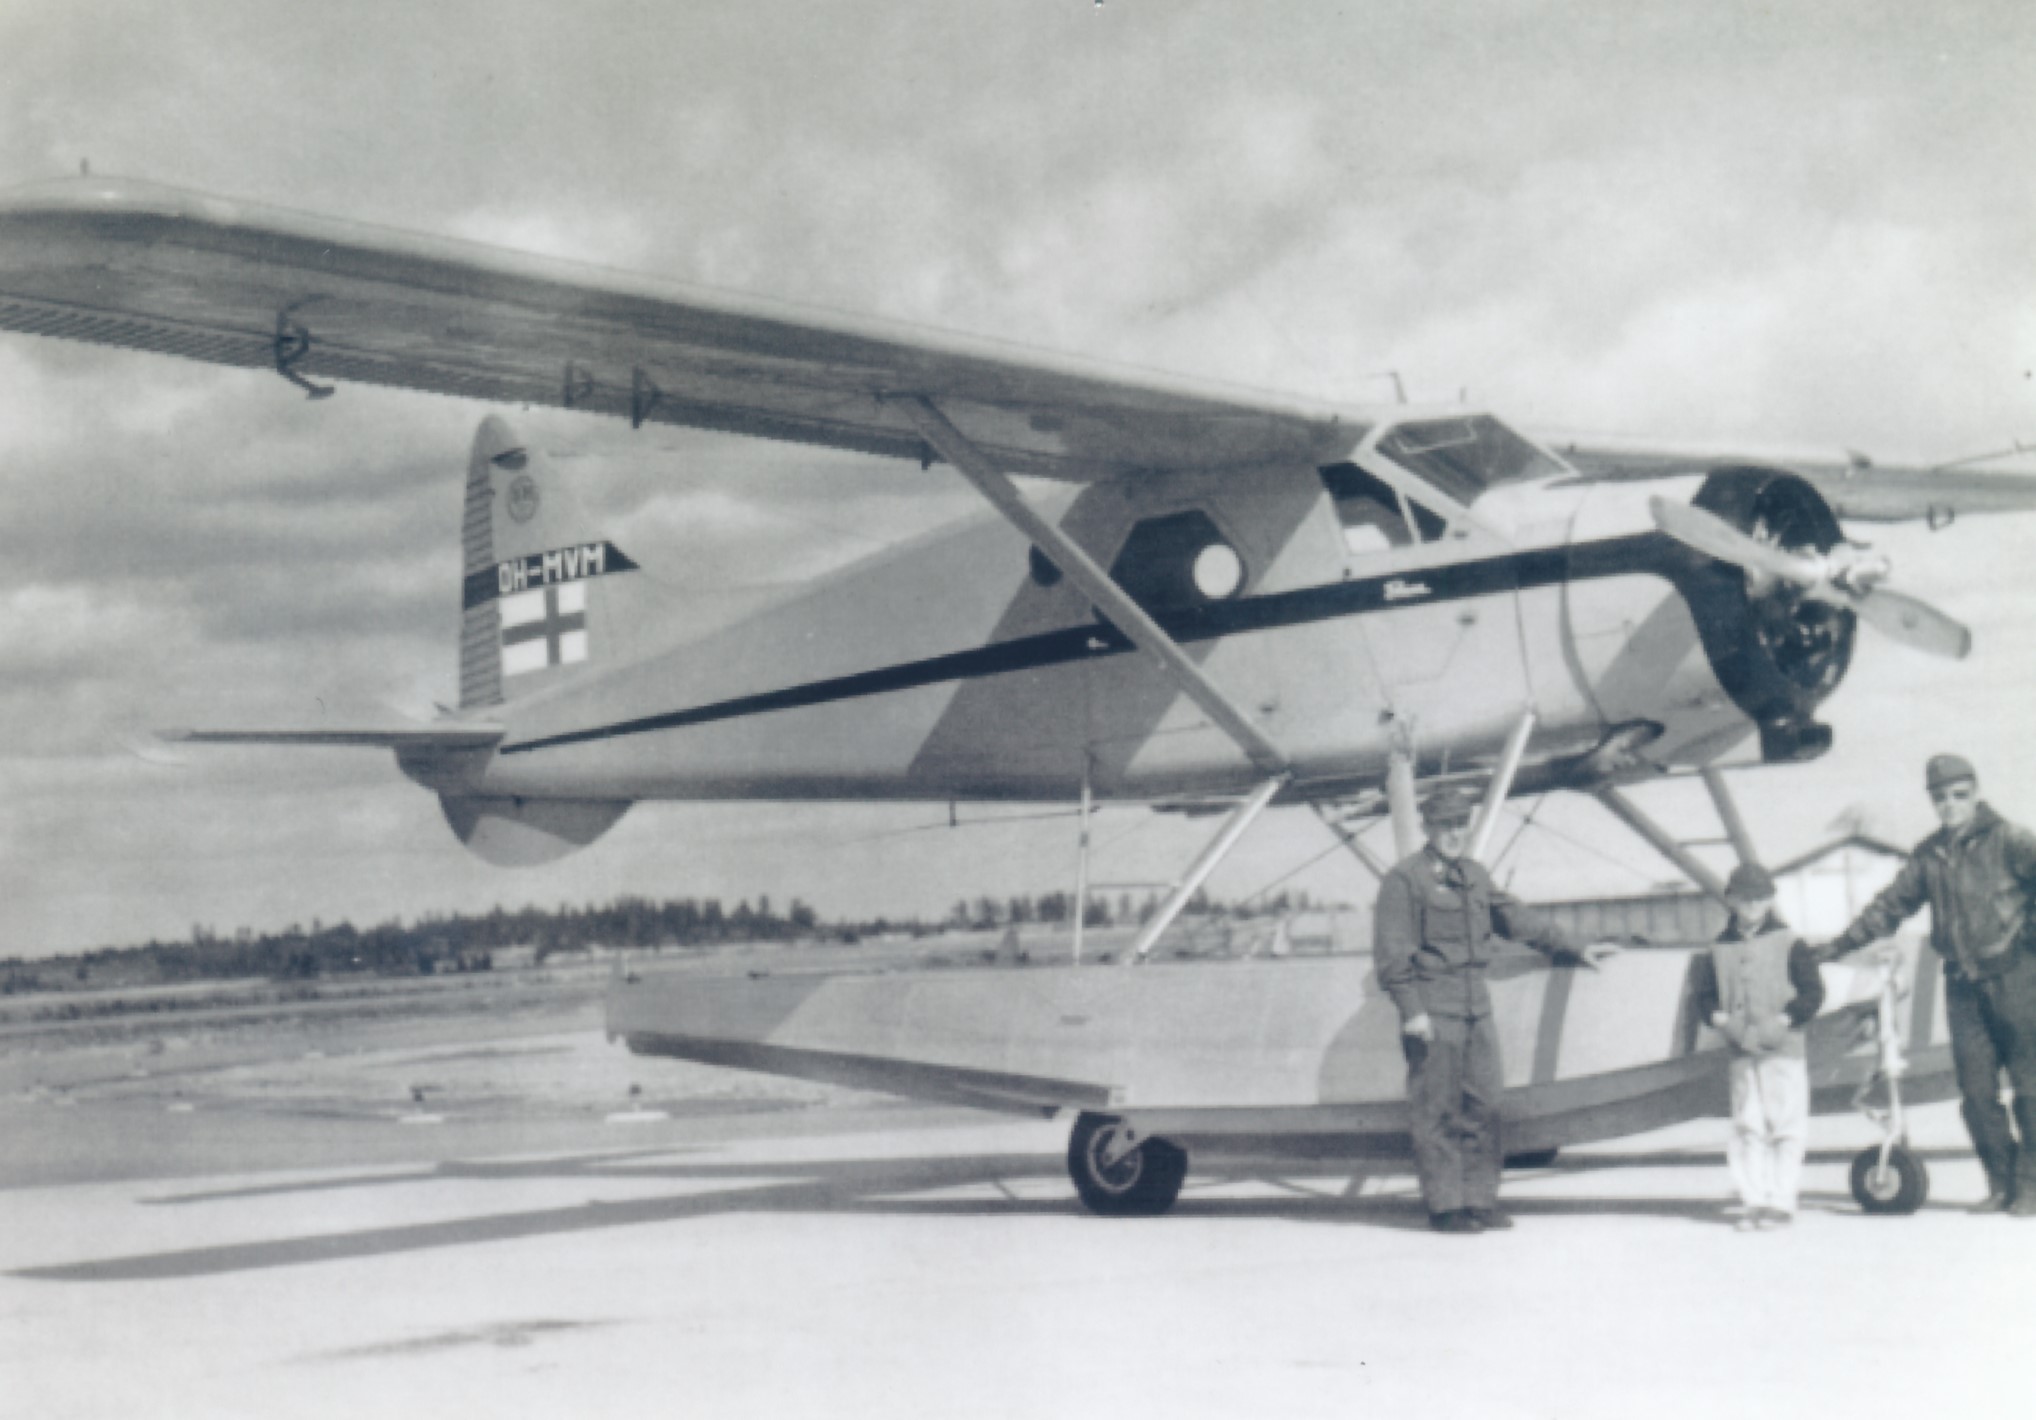 Yksimoottorinen kellukkeilla varustettu lentokone seisoo lentokentän asfaltilla. Koneen edessä seisoo kaksi miehistön jäsentä ja miesten välissä pieni poika.